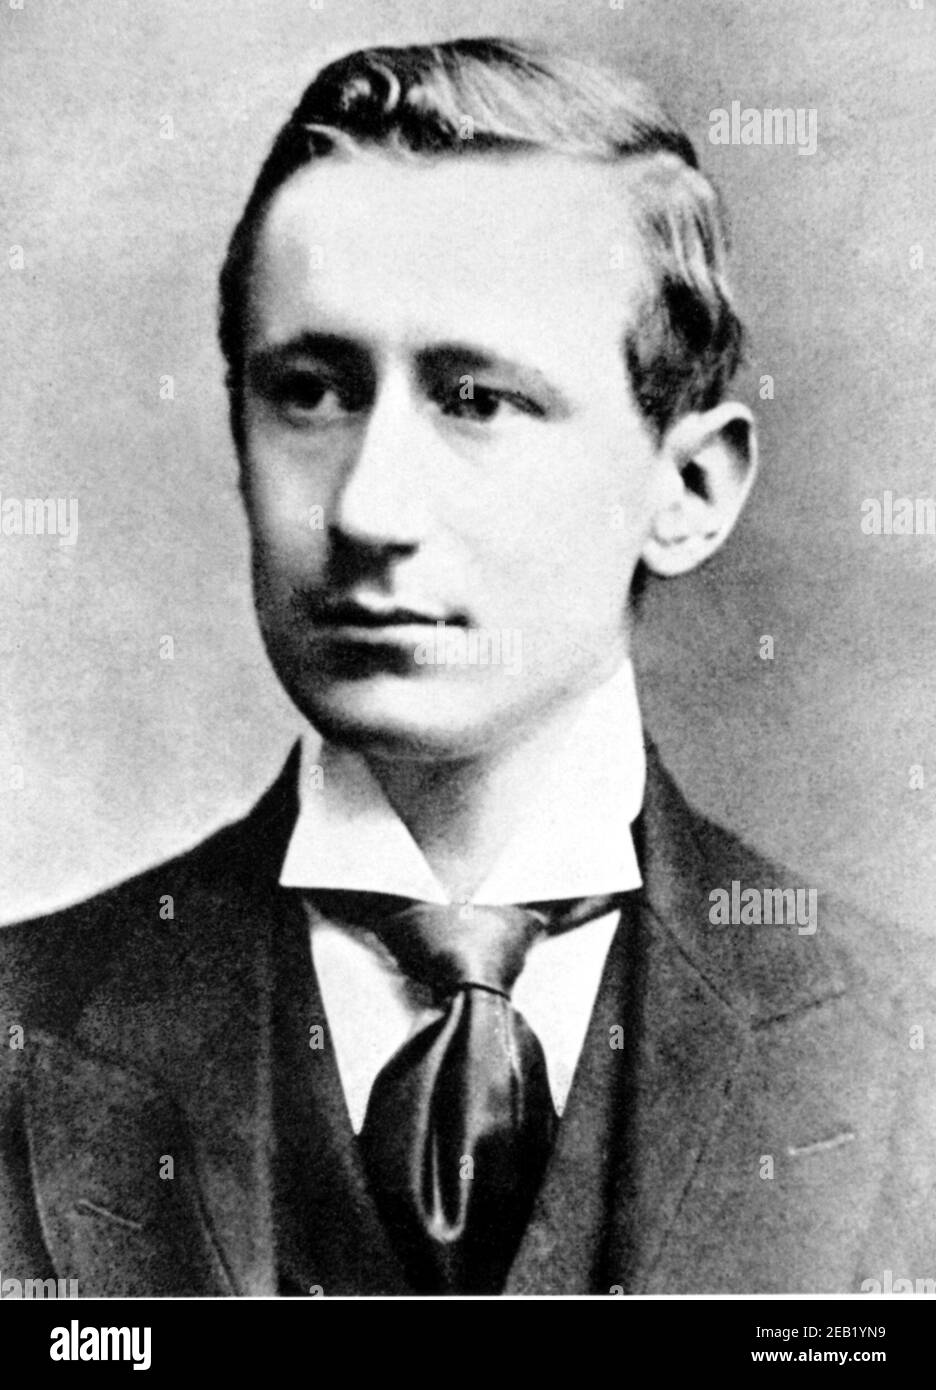 1896 , ITALIEN : der italienische Physiker GUGLIELMO MARCONI ( 1874 - 1937 ) im Alter von 22 Jahren , Erfinder der Funkgeräte , NOBELPREISTRÄGER 1909 für Physik - INVENTORE - FISICA - FISICO - RADIO - TELEGRAFO SENZA FILI - Erfinder - Krawatte - cravatta - SCIENZIATO - WISSENSCHAFTLER - personalità celebrità da giovani - Prominente Persönlichkeiten Persönlichkeit, als jung war ---- Archivio GBB Stockfoto